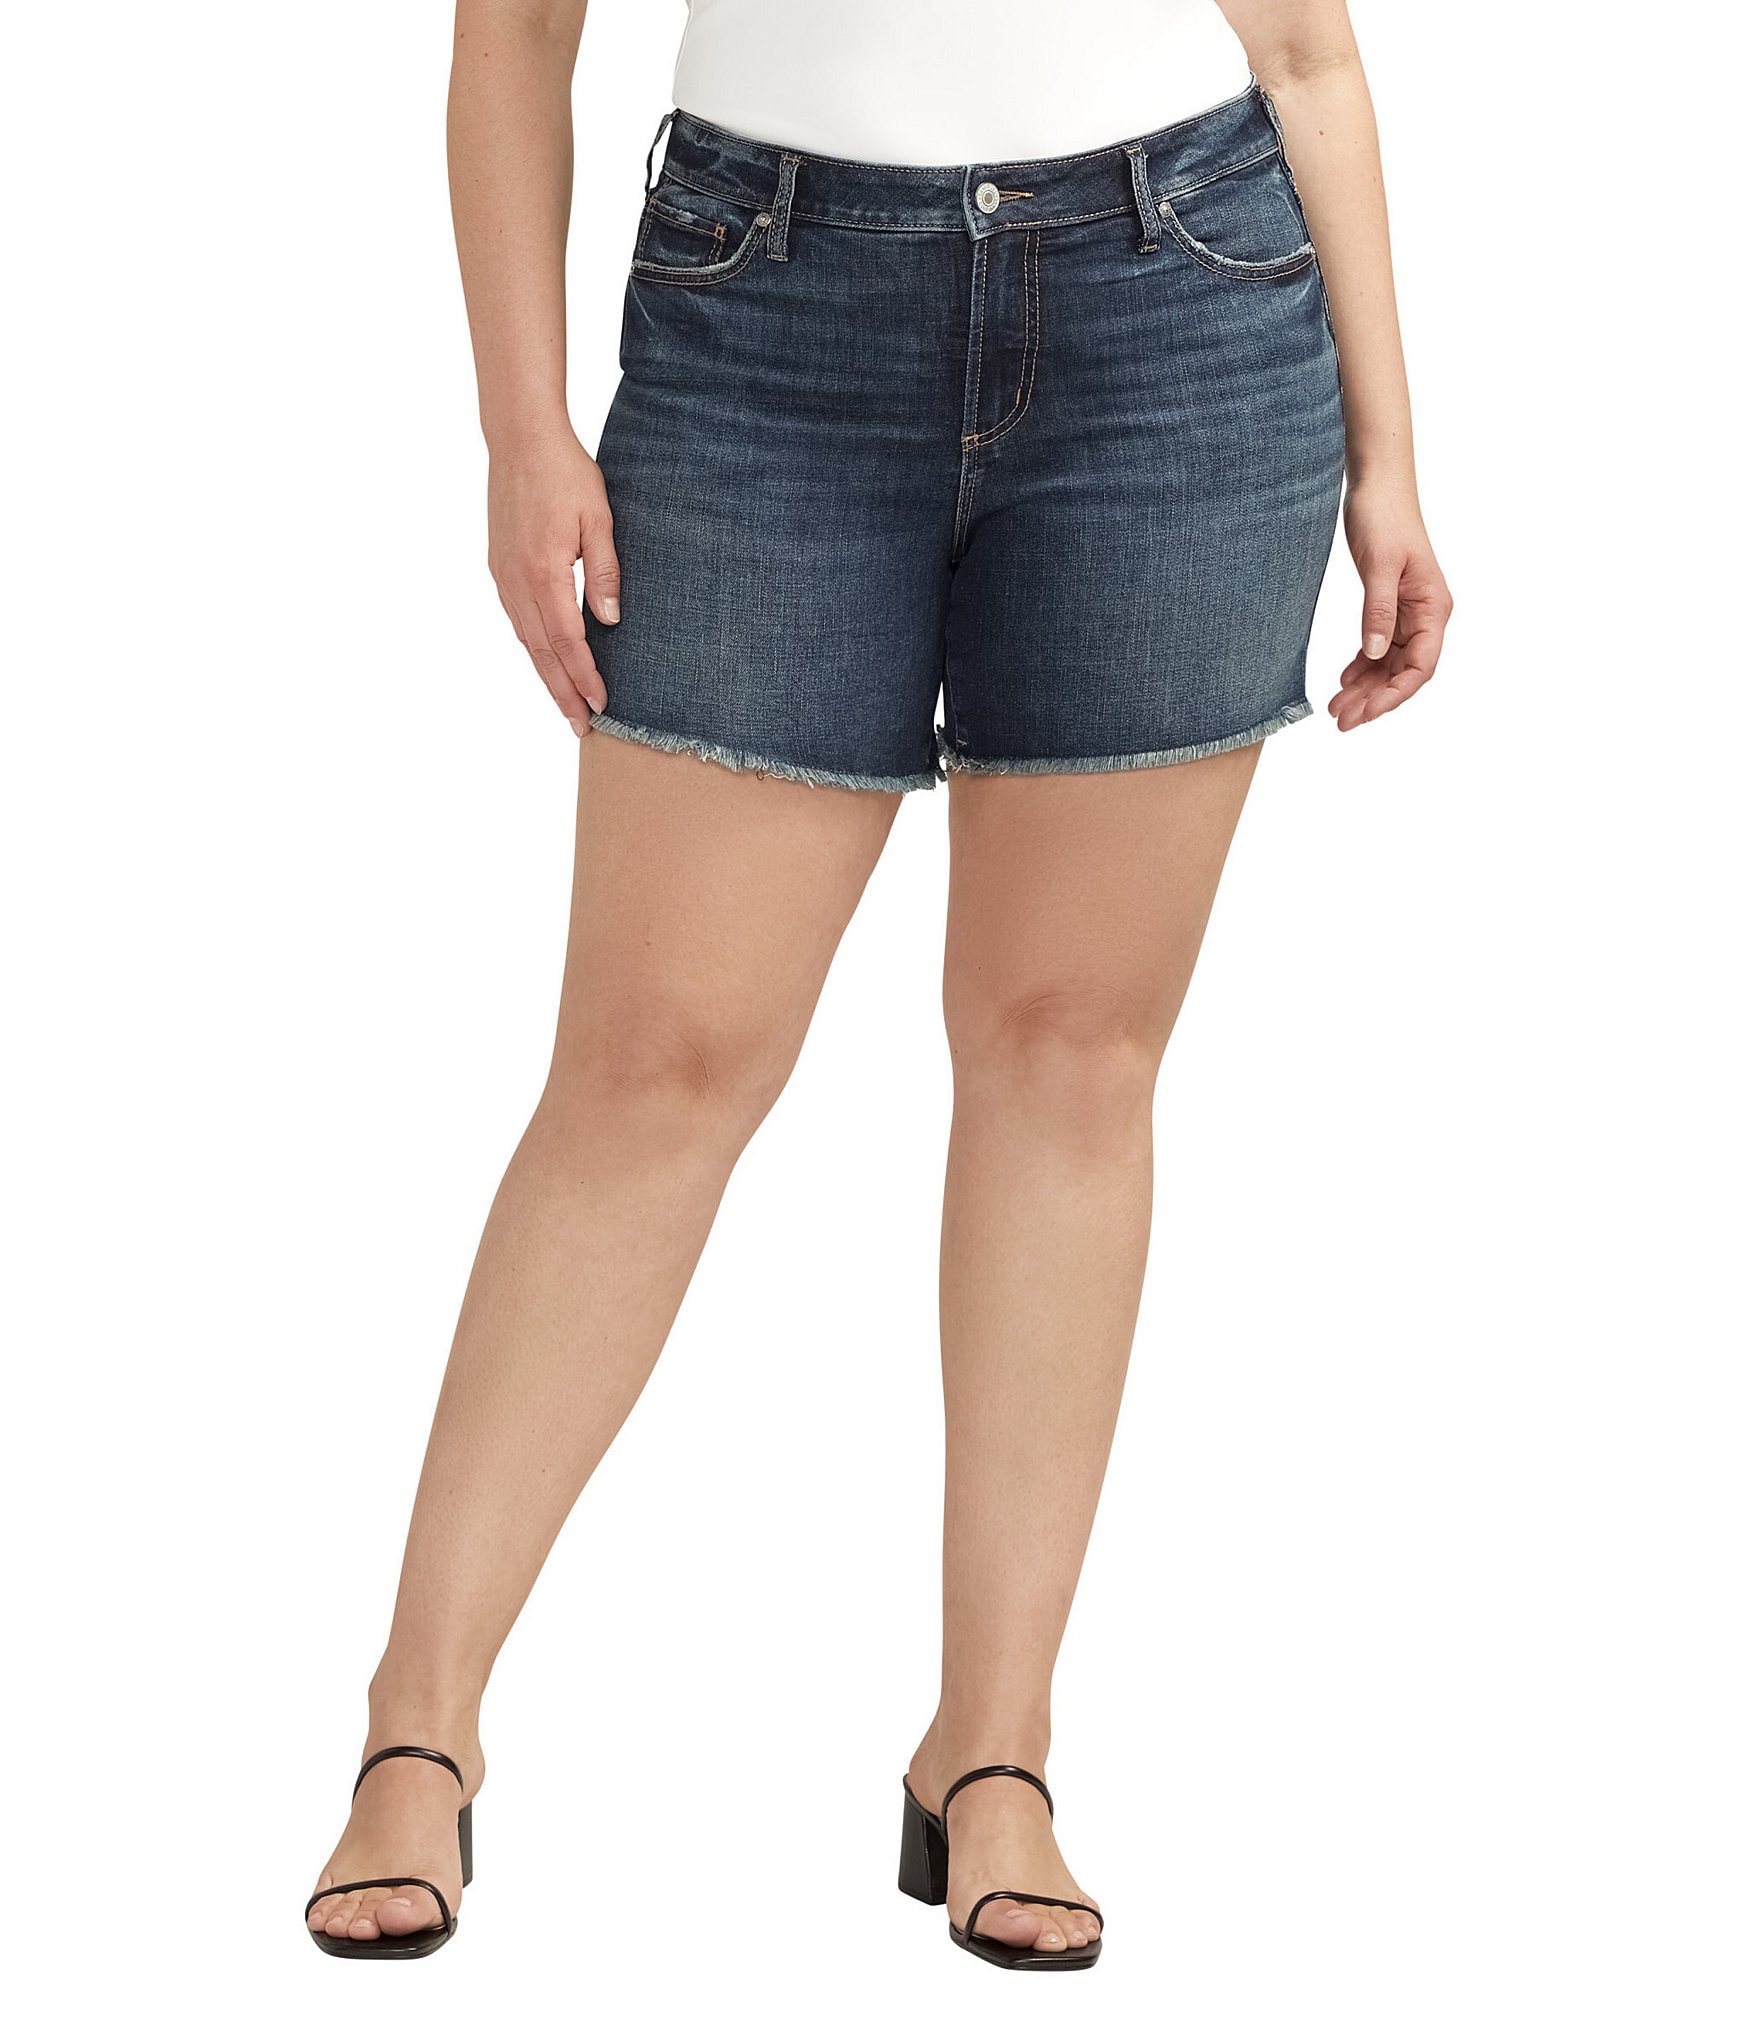 Women's High Waist Skinny Stretch Twill Shorts - Plus Size